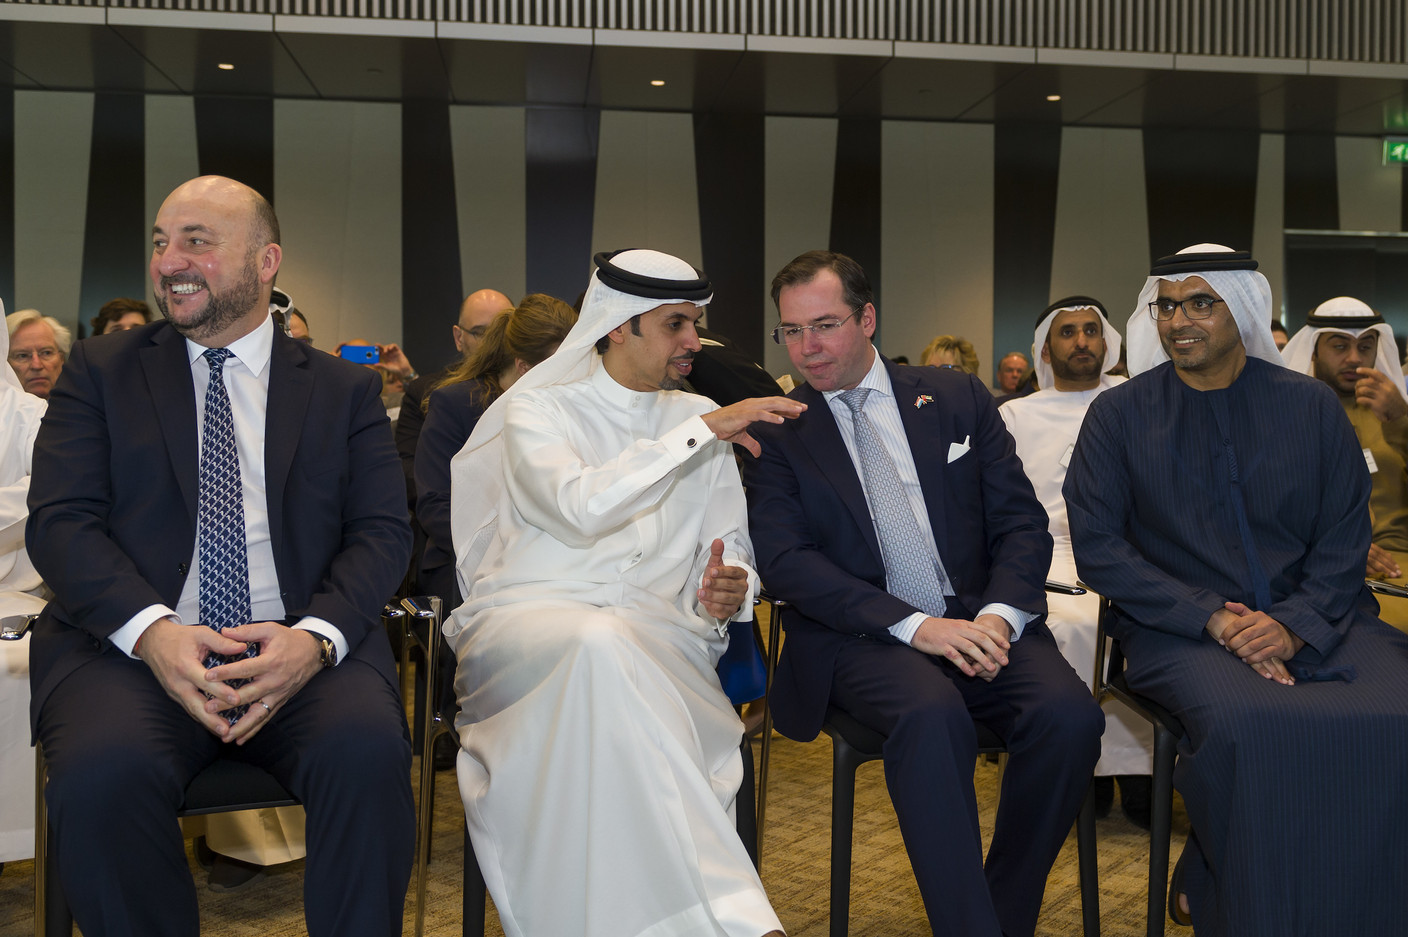 Étienne Schneider, S.A.R. le Grand-Duc héritier et Majid Saif Al Ghurair, président de la Chambre de commerce et d'industrie de Dubaï. (Photo: SIP / Jean-Christophe Verhaegen)